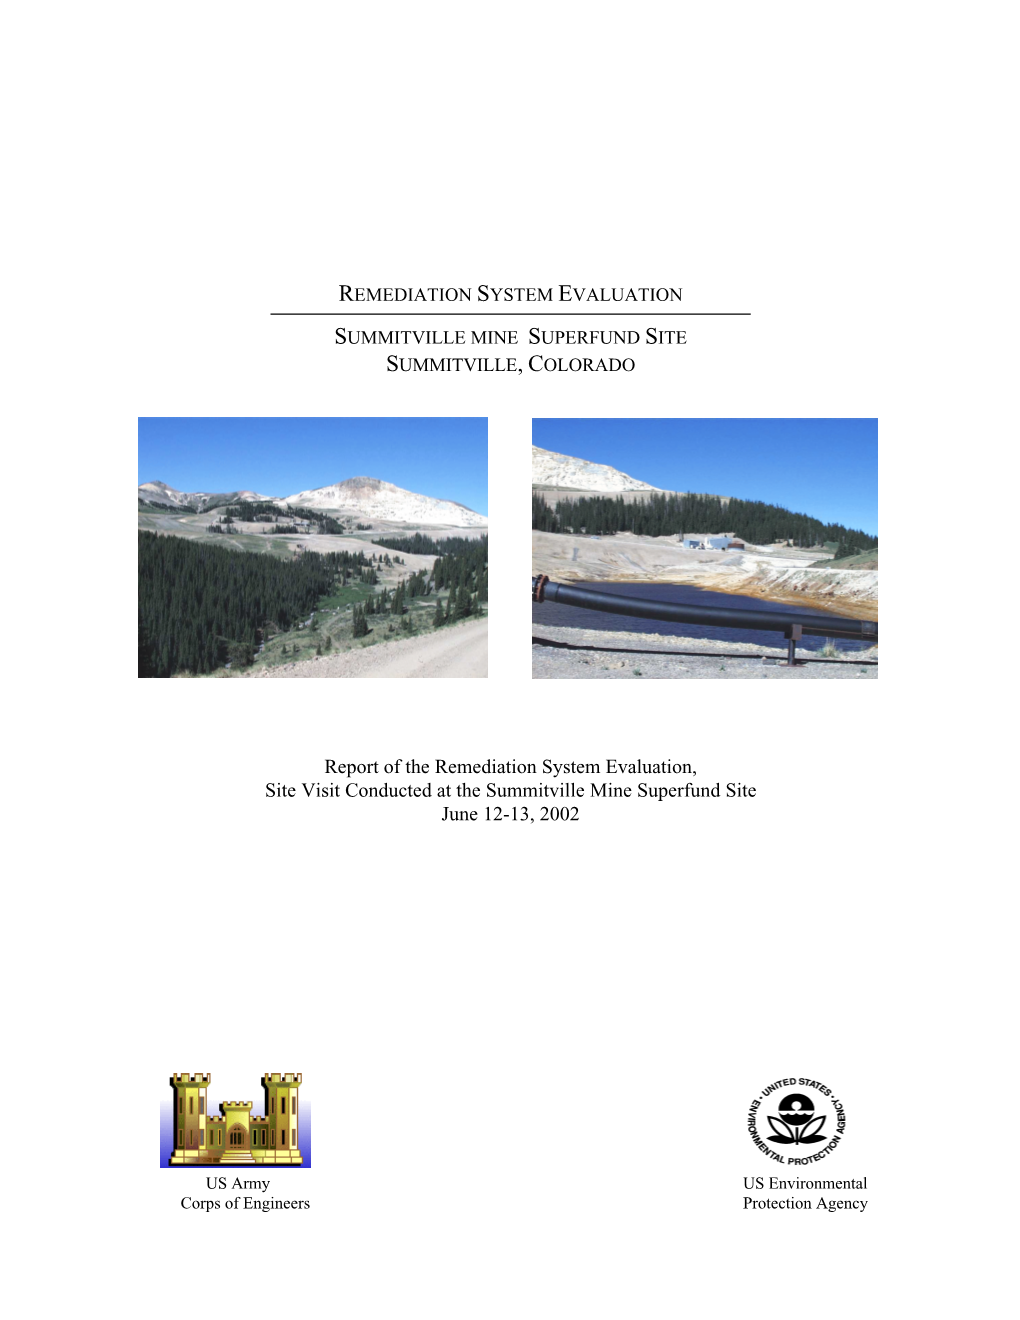 Remediation System Evaluation, Summitville Mine Superfund Site